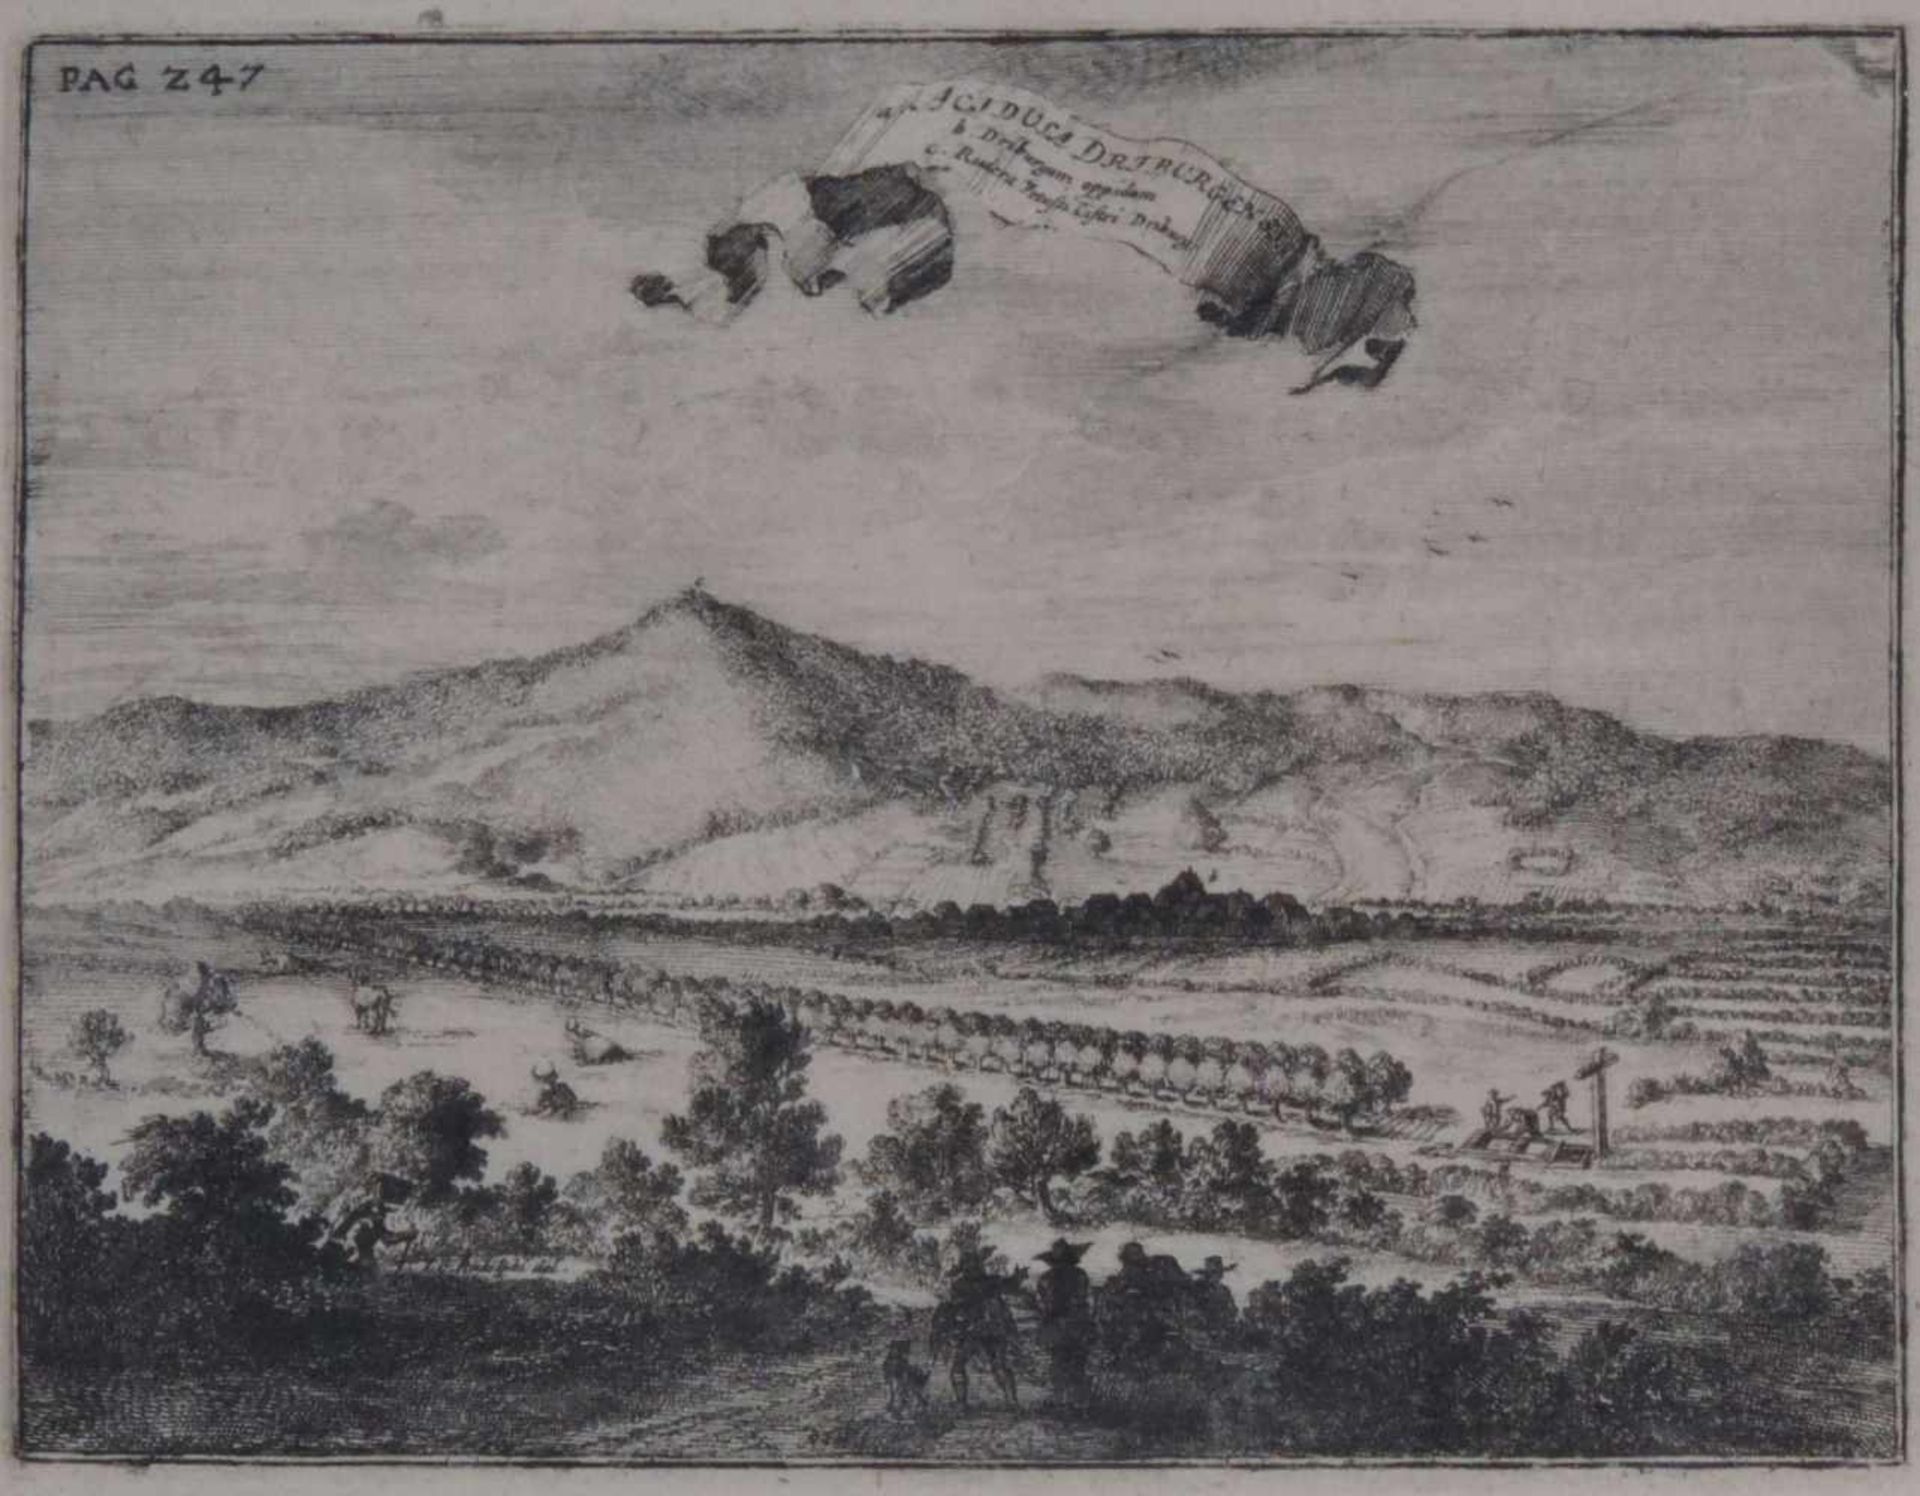 BAD DRIBURG, "a. Acidula Driburgensis b. Driburgum oppidum c. Rudera vetusa Castri Driburg", 1672,